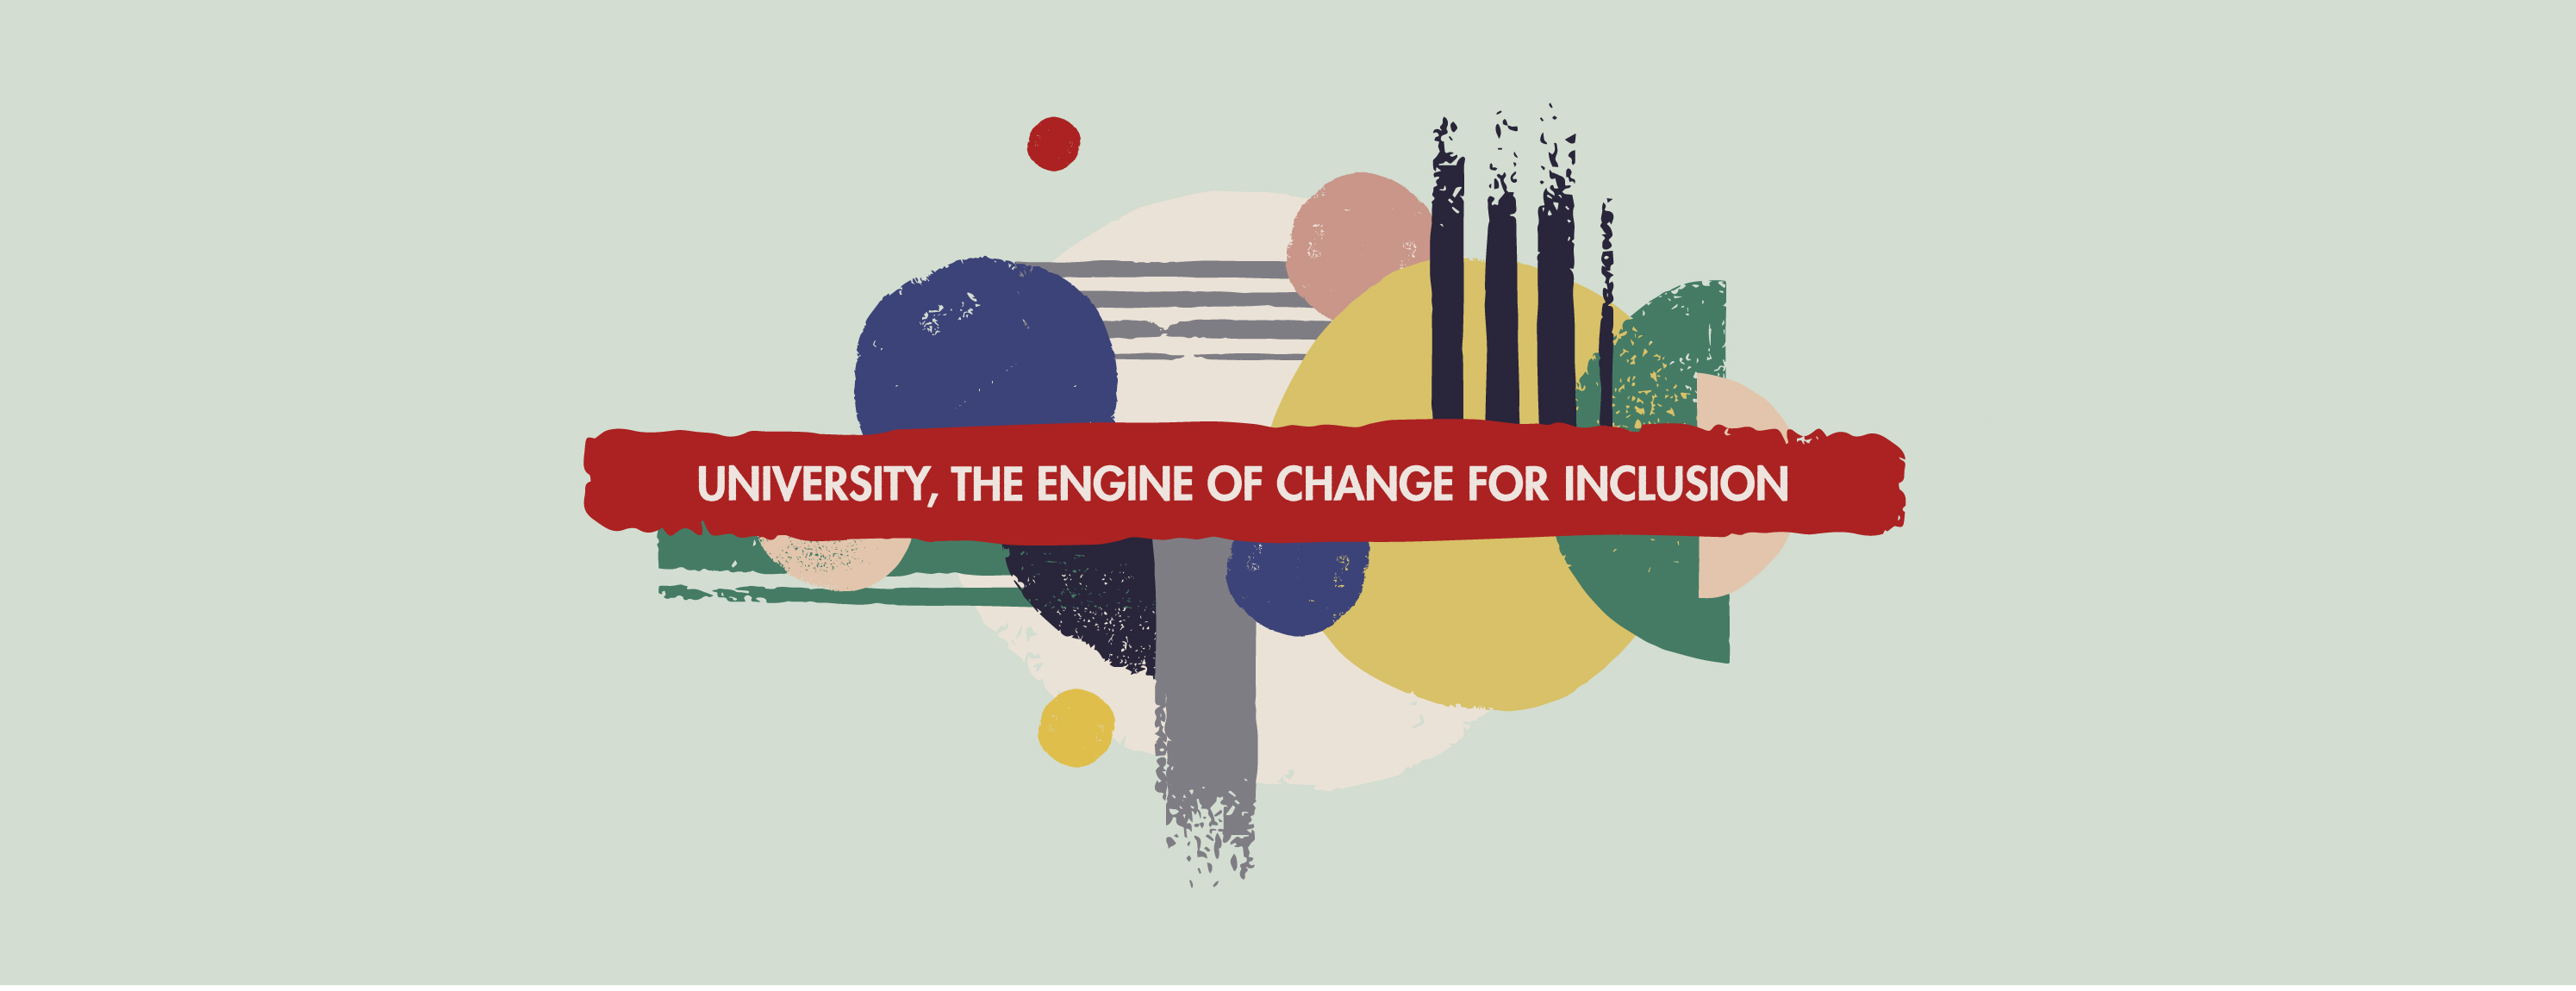 La Universidad, motor de cambio para la Inclusión